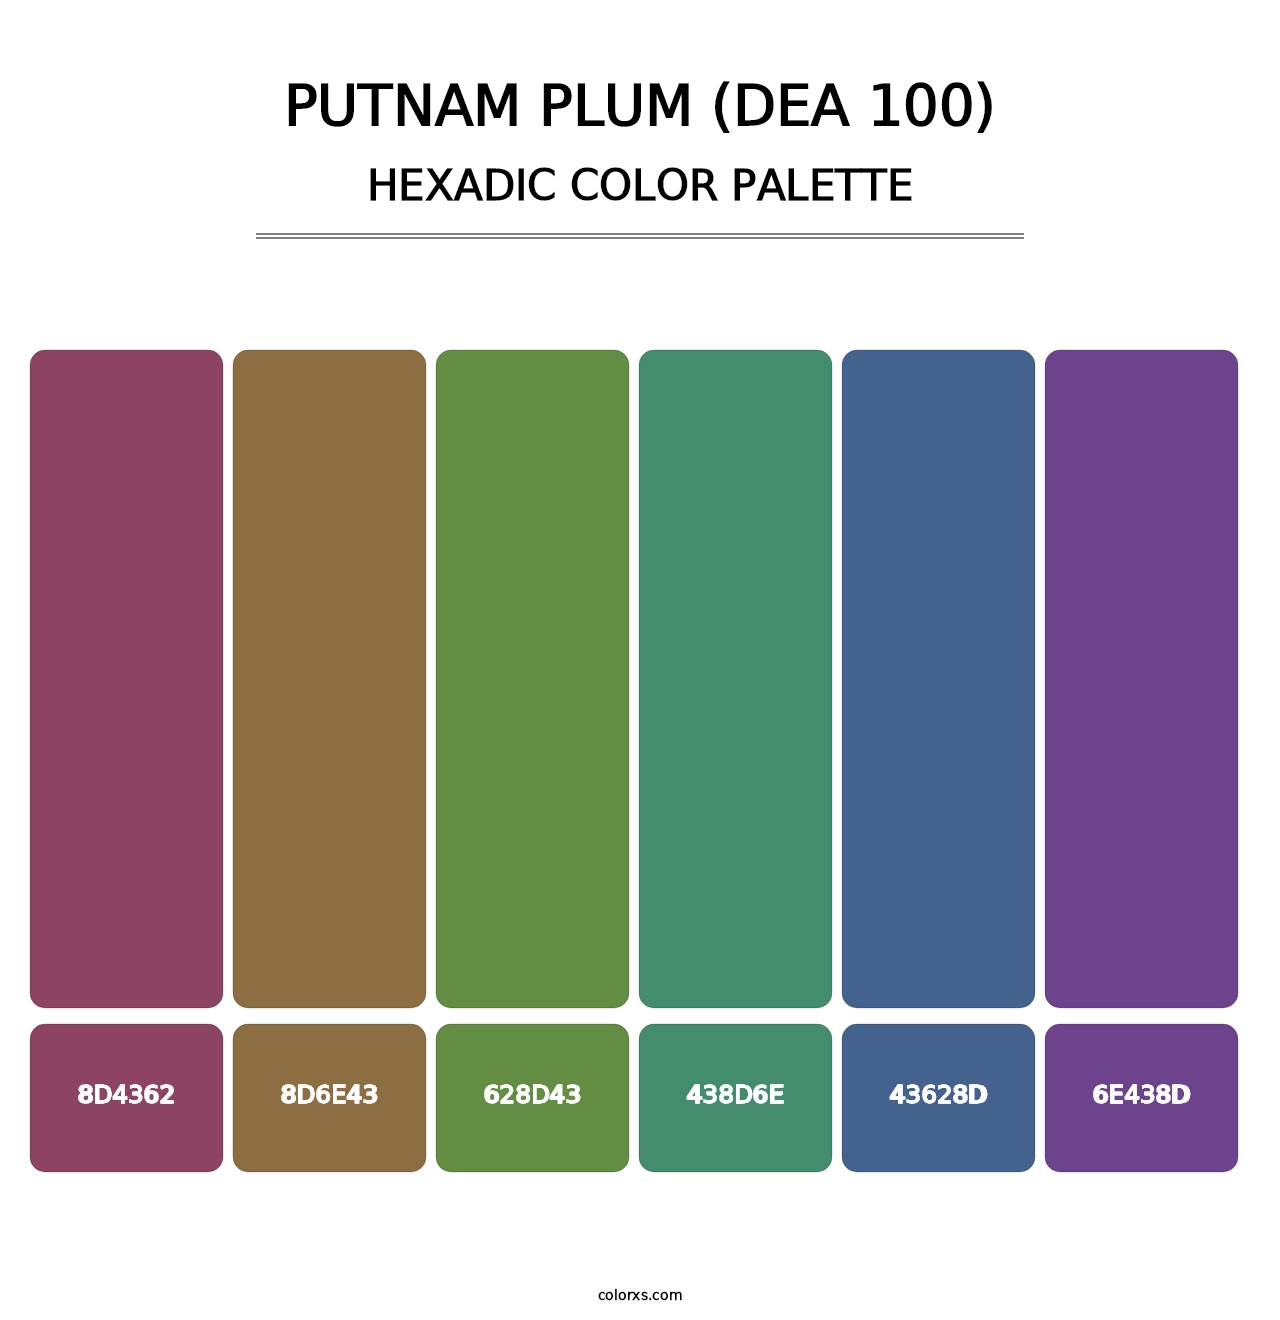 Putnam Plum (DEA 100) - Hexadic Color Palette